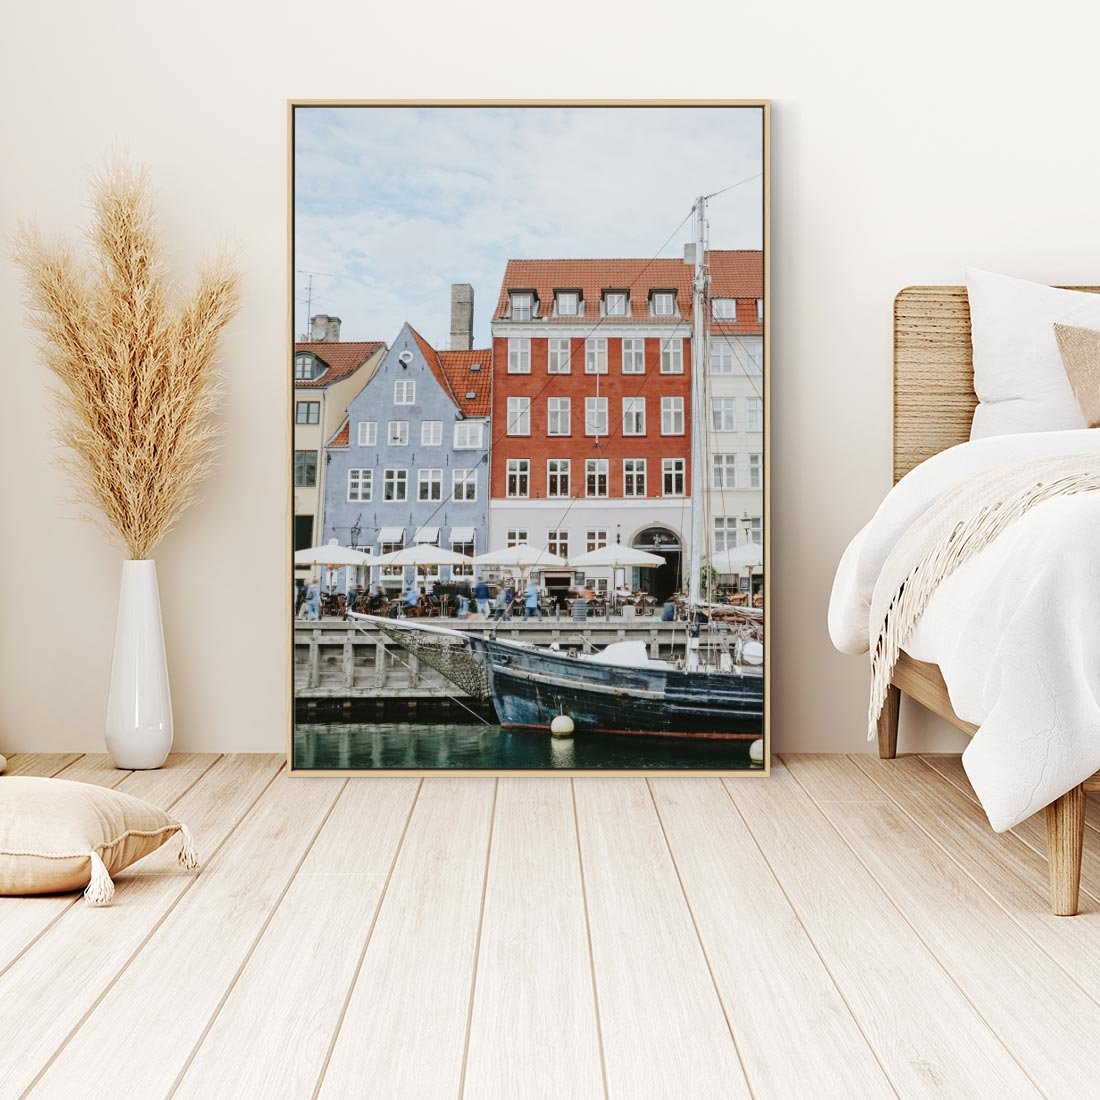 Obraz w ramie 50x70 - Miejska Dynamika - Dania, Kopehaga - rama drewno